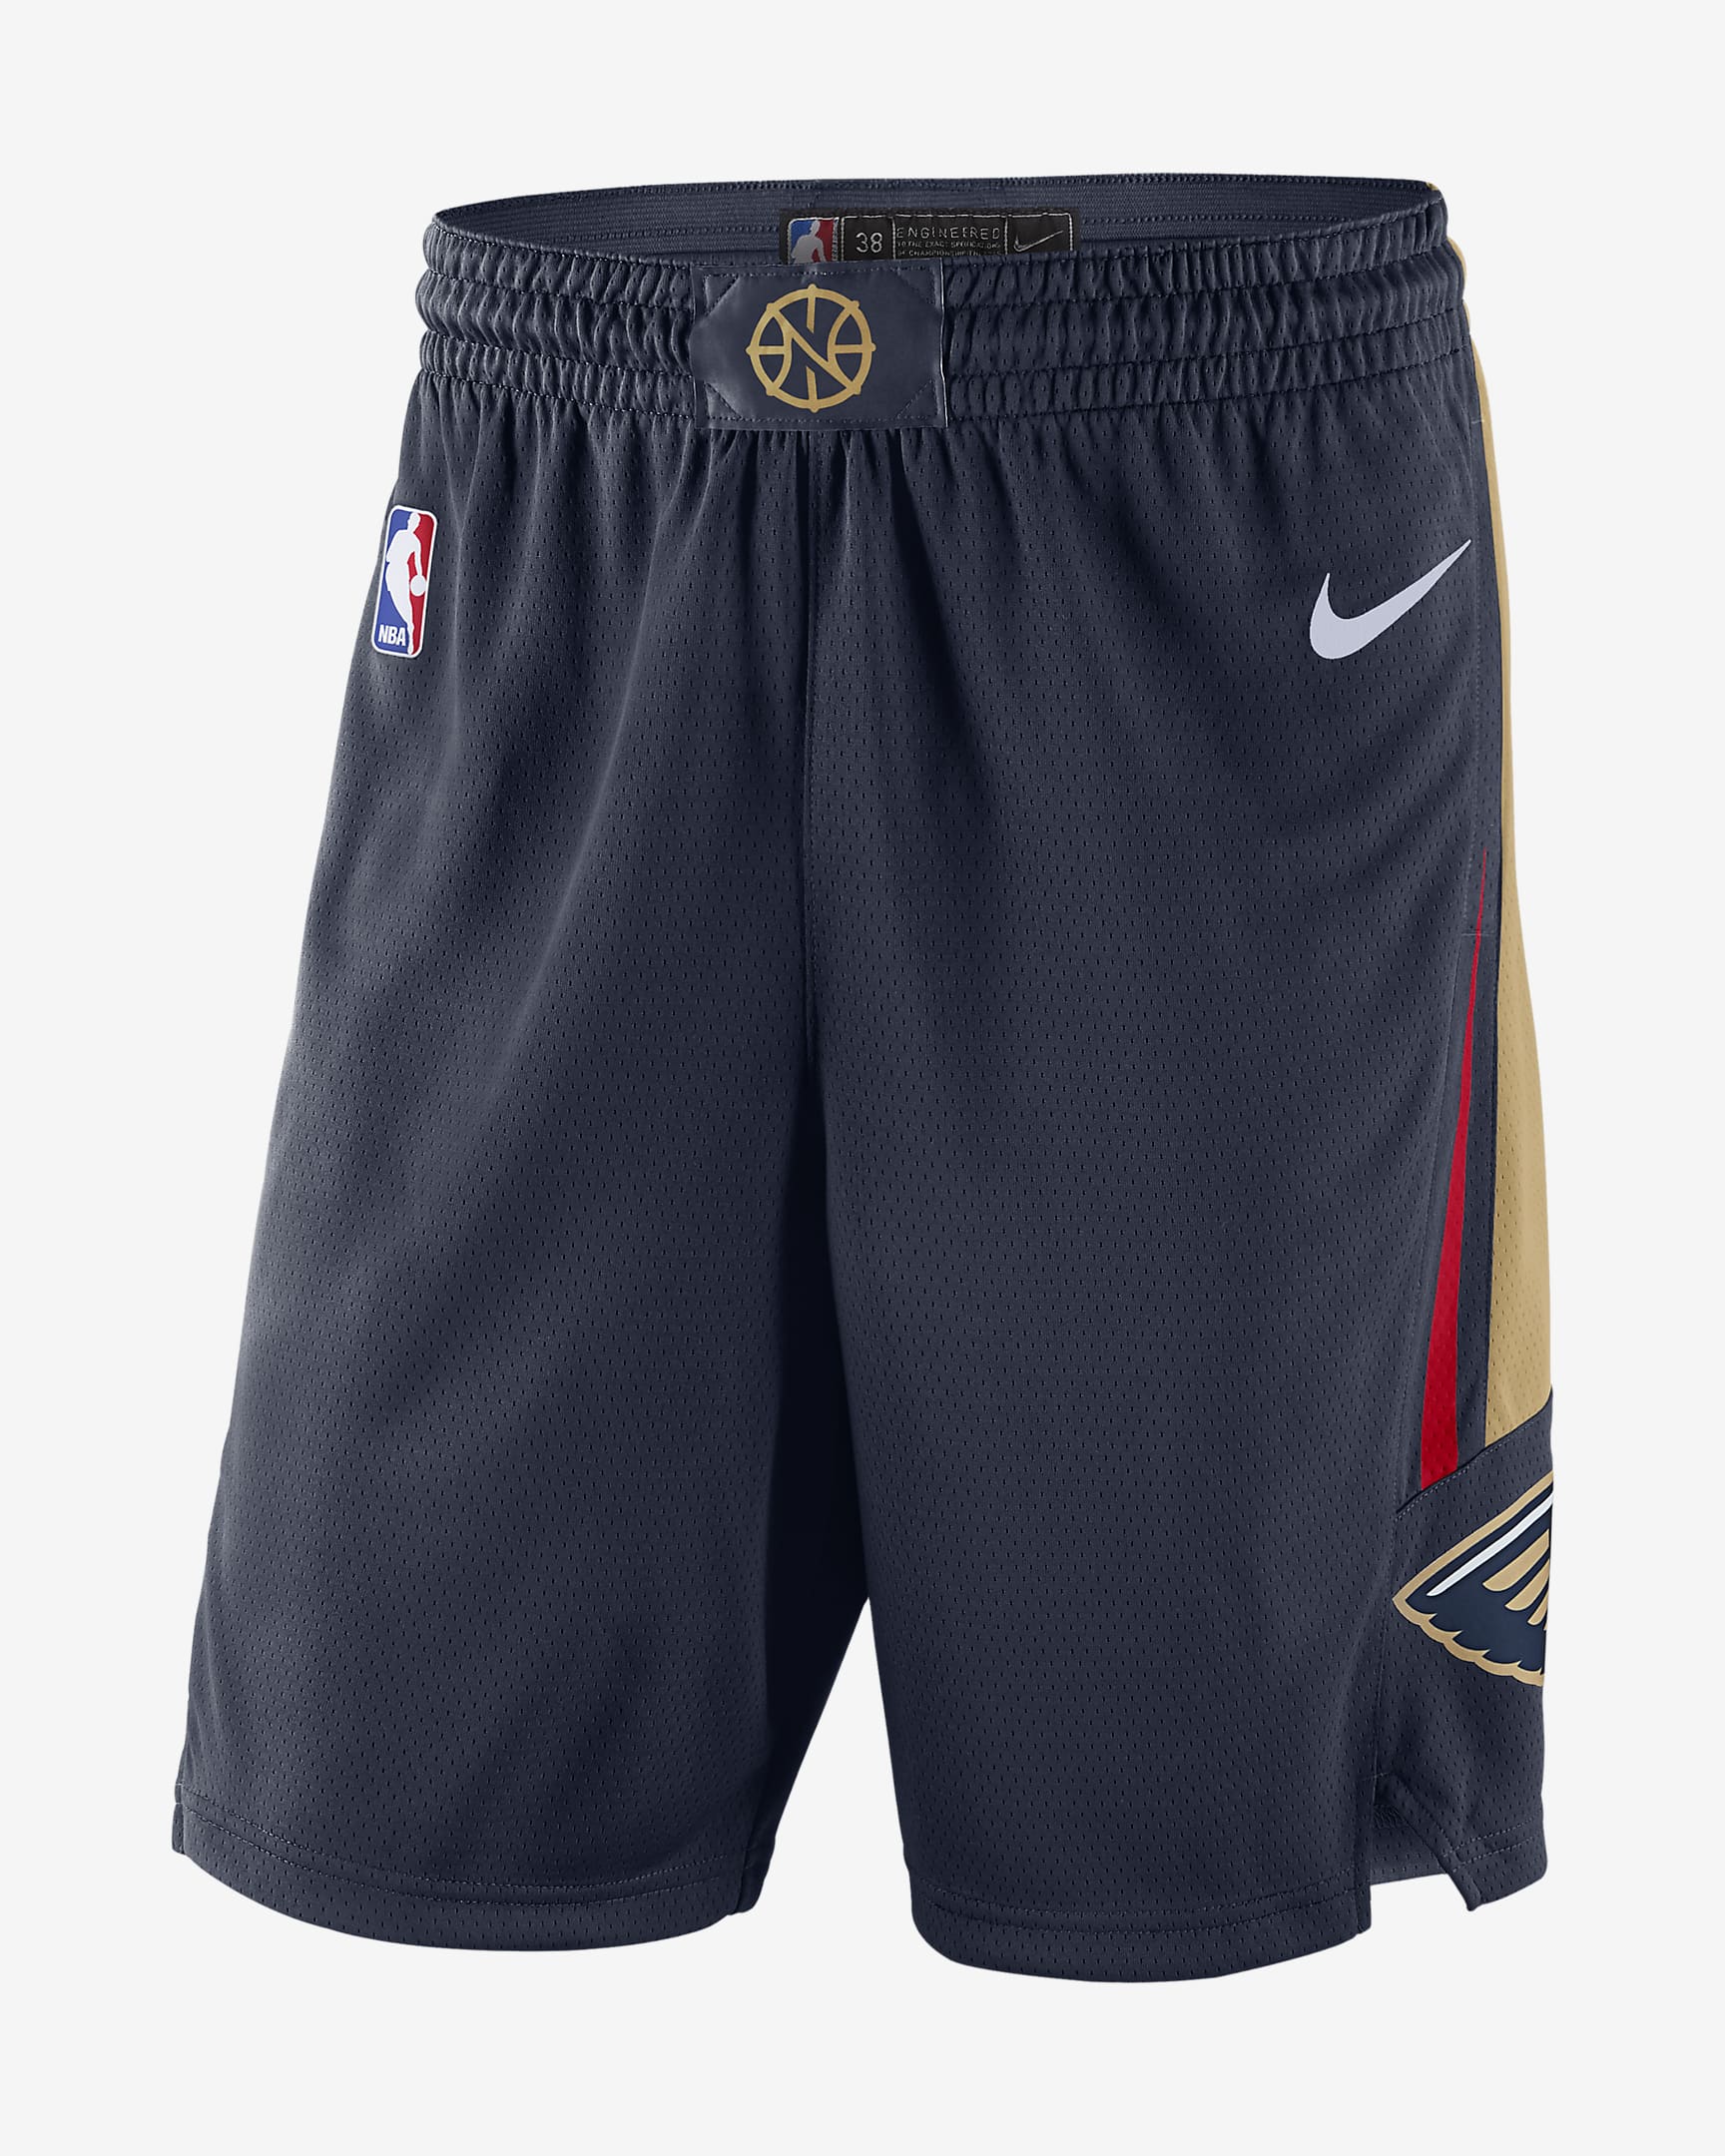 Oklahoma City Thunder Icon Edition Men's Nike NBA Swingman Shorts